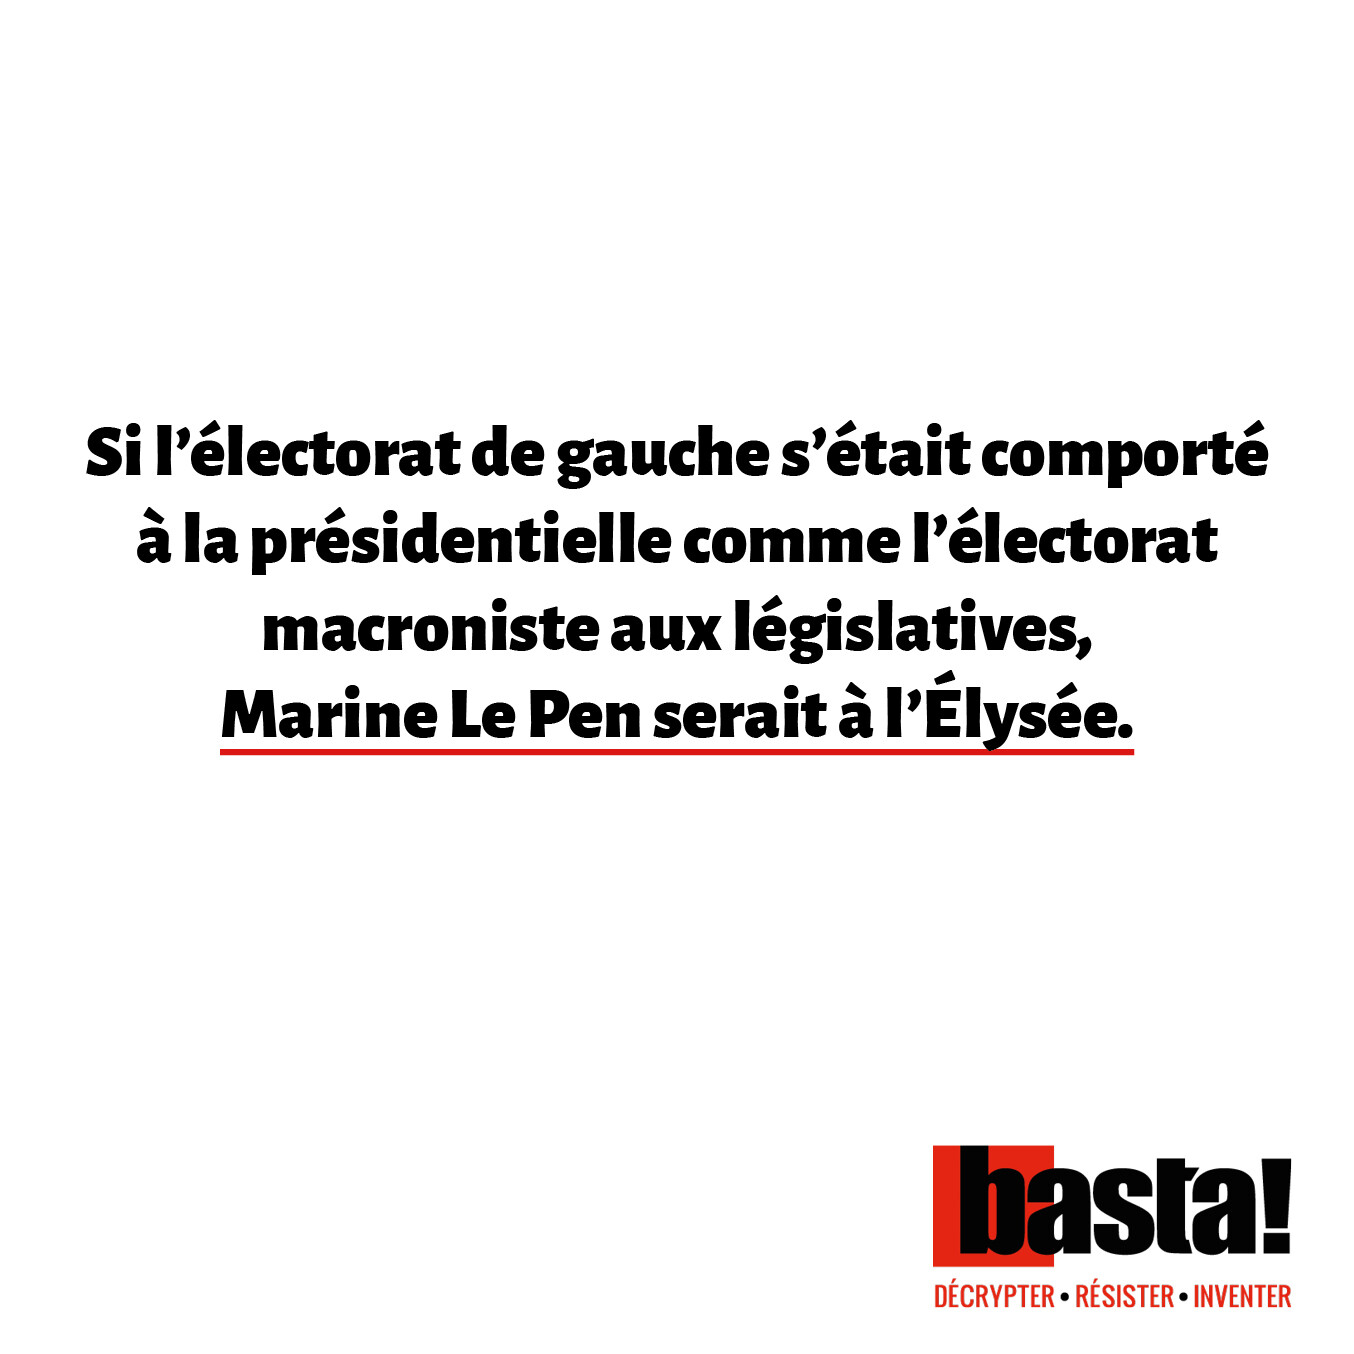 Si l’électorat de gauche s’était comporté à la présidentielle comme l’électorat macroniste aux législatives, Marine Le Pen serait à l’Élysée.